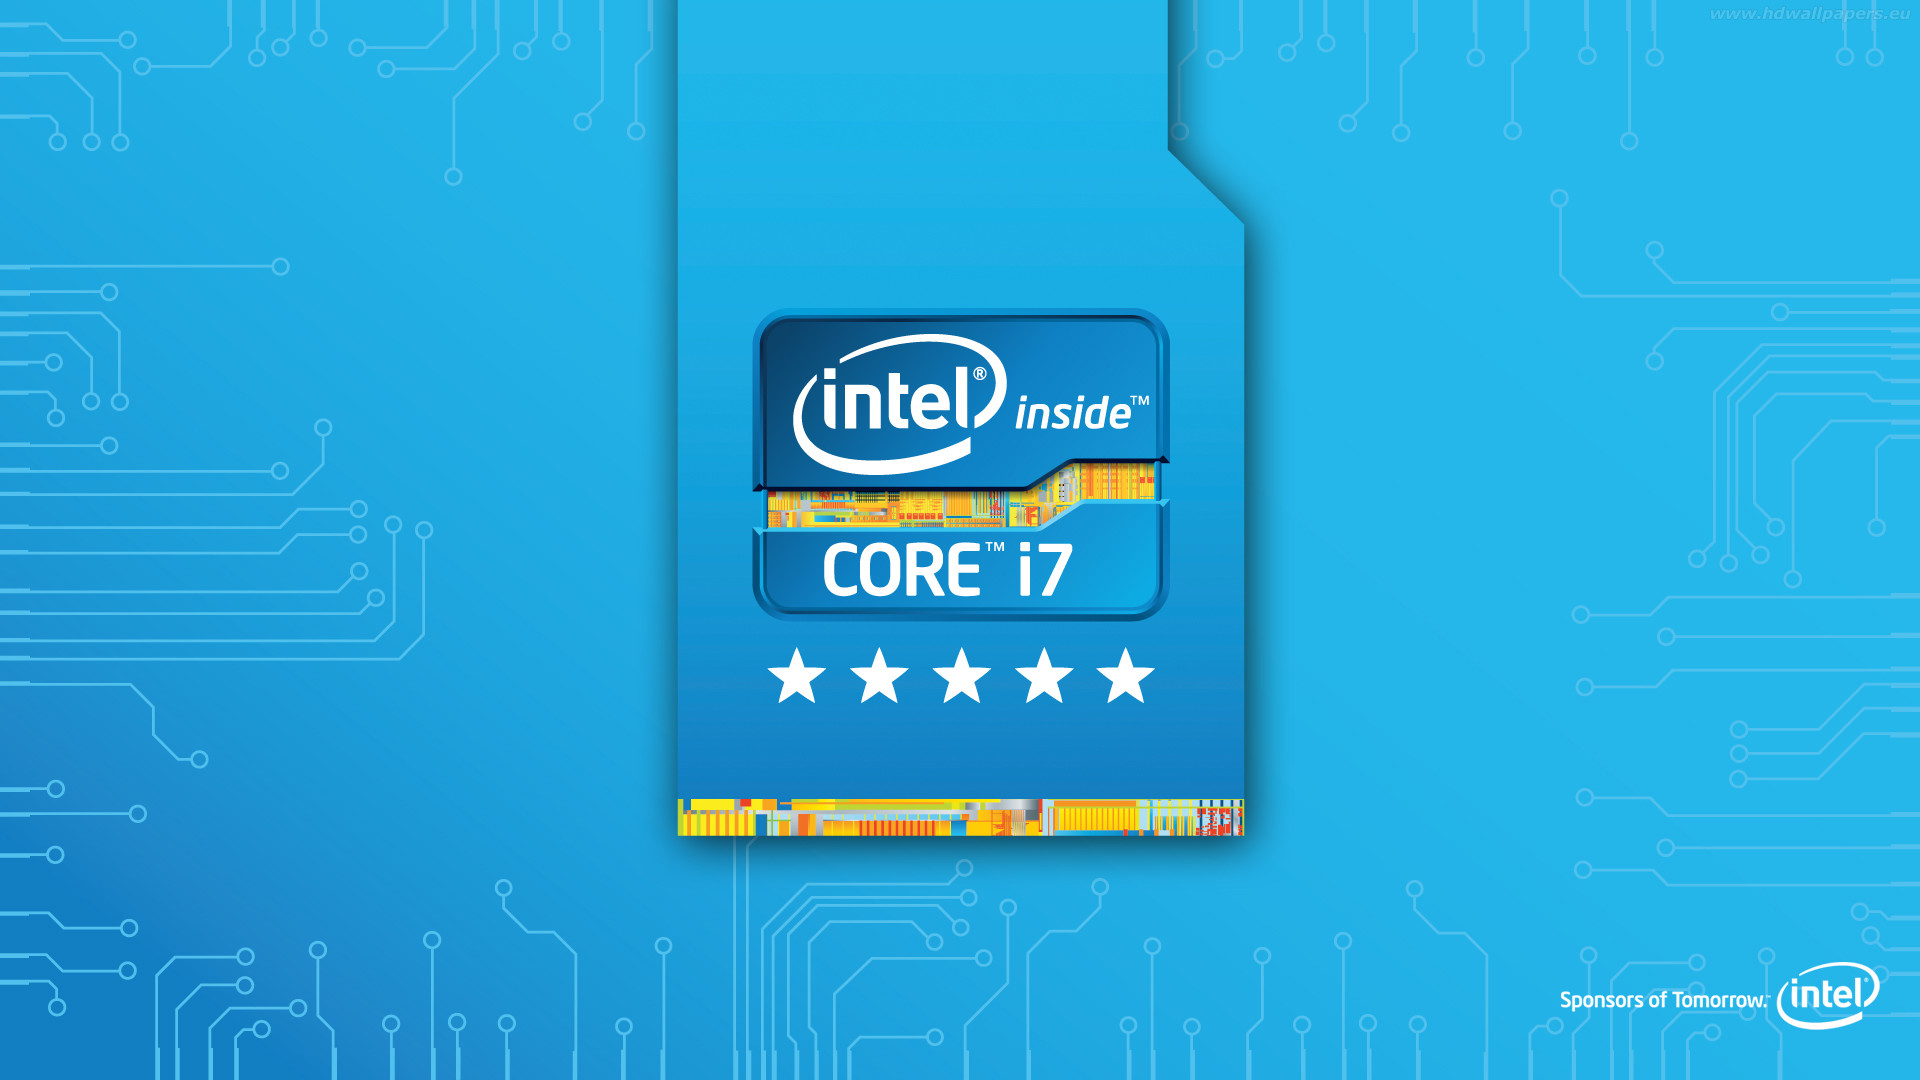 Intel CPU 1366x768 Wallpaper  Technology wallpaper, Android technology, Hi  tech wallpaper